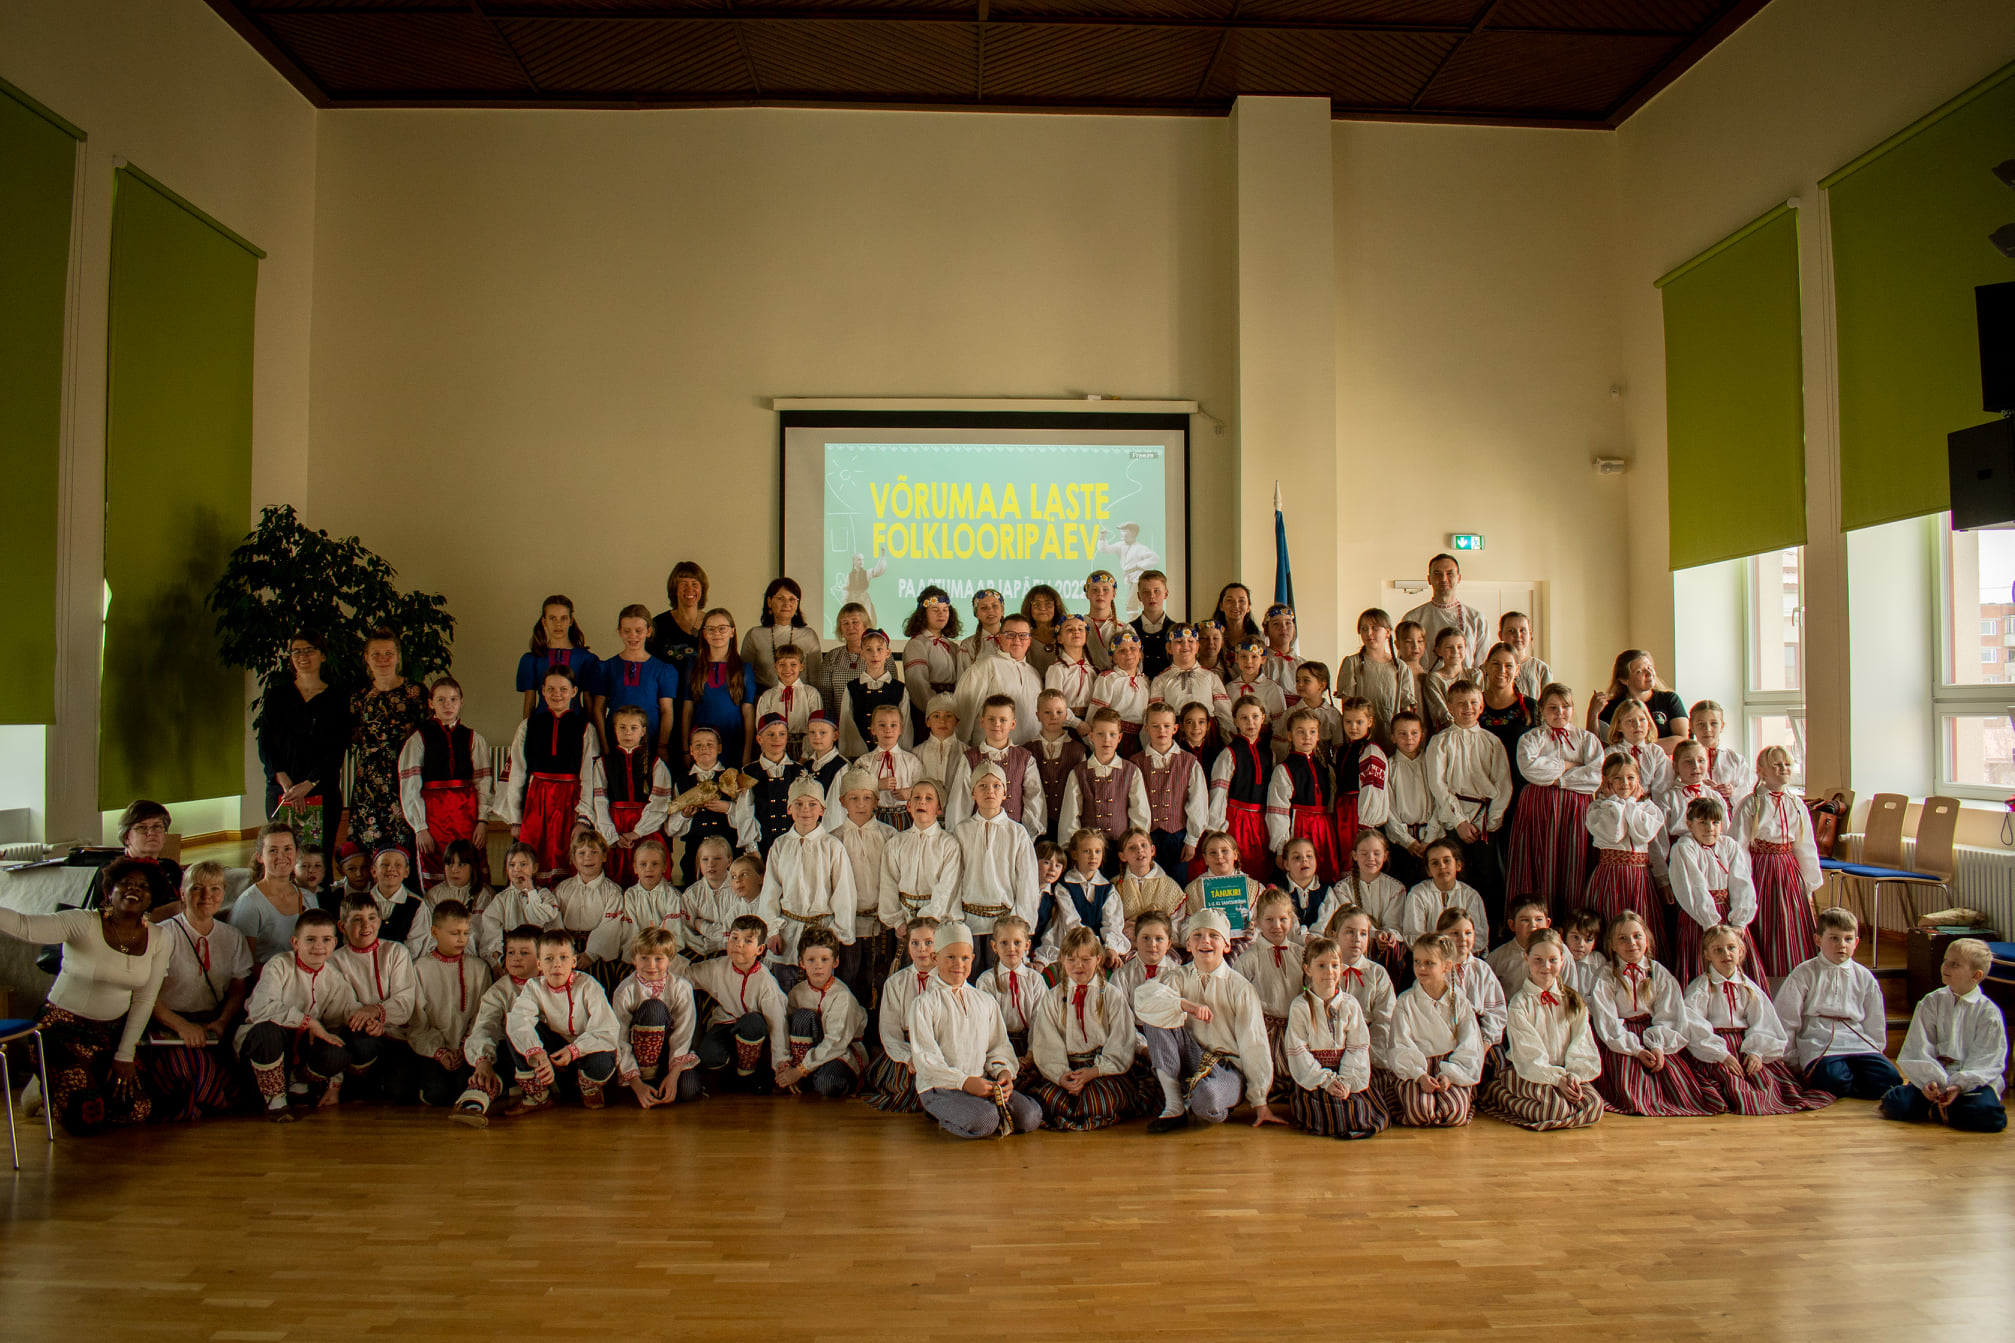 Võru maakonna laste folklooripäeval osales kokku 130 tantsijat!